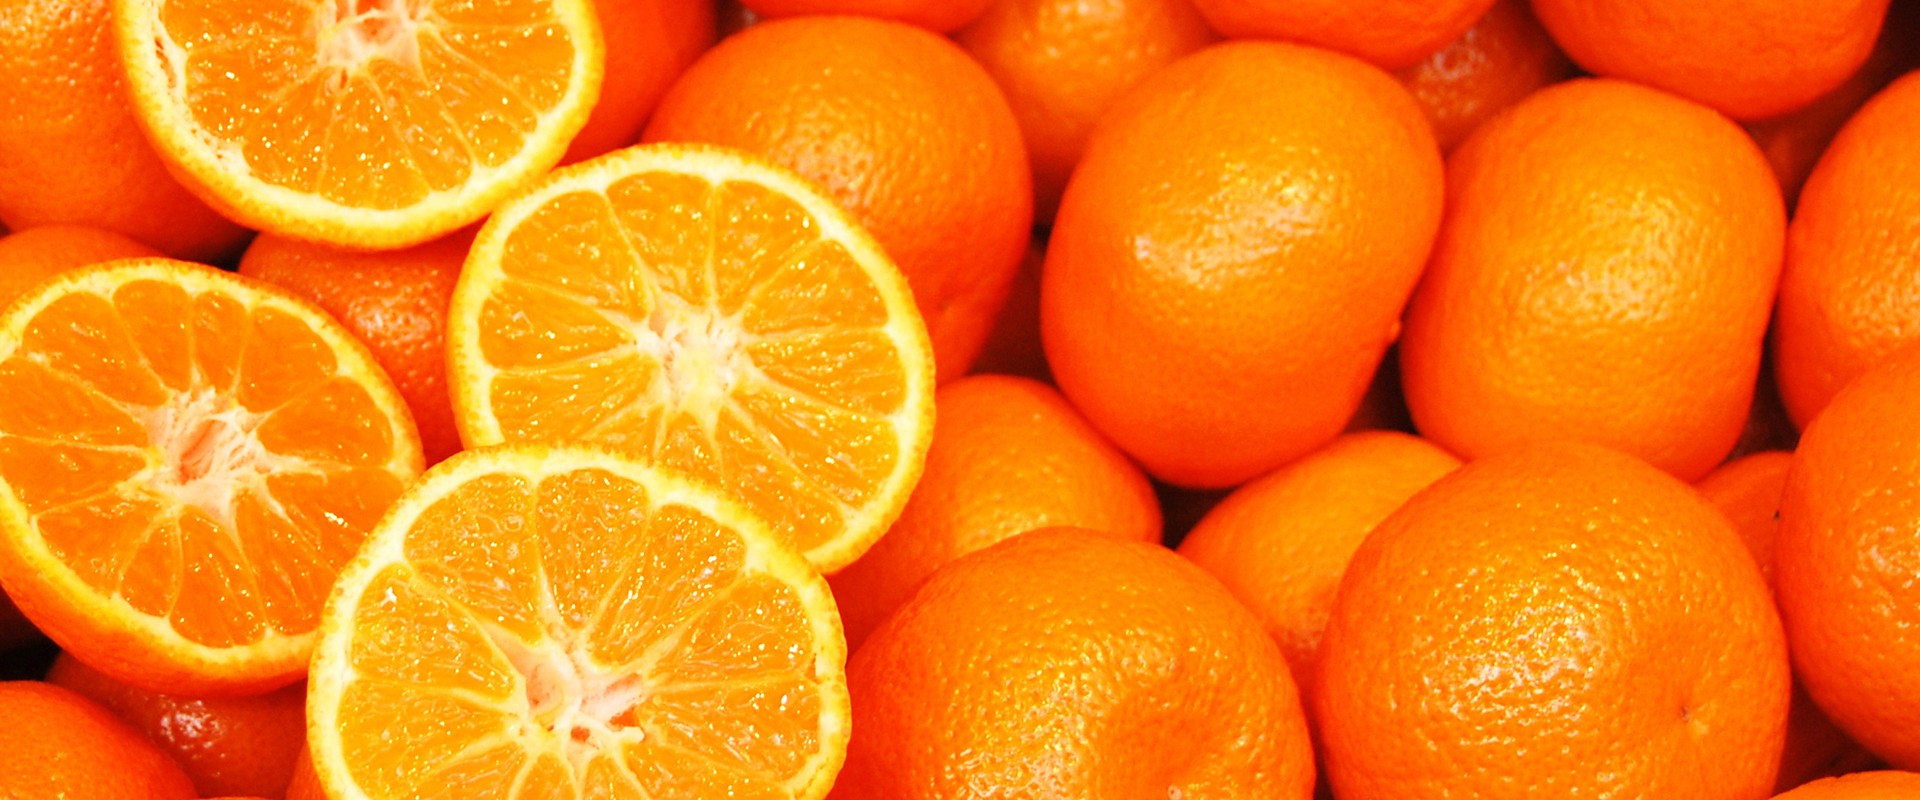 Mandarin-Oranges-Product